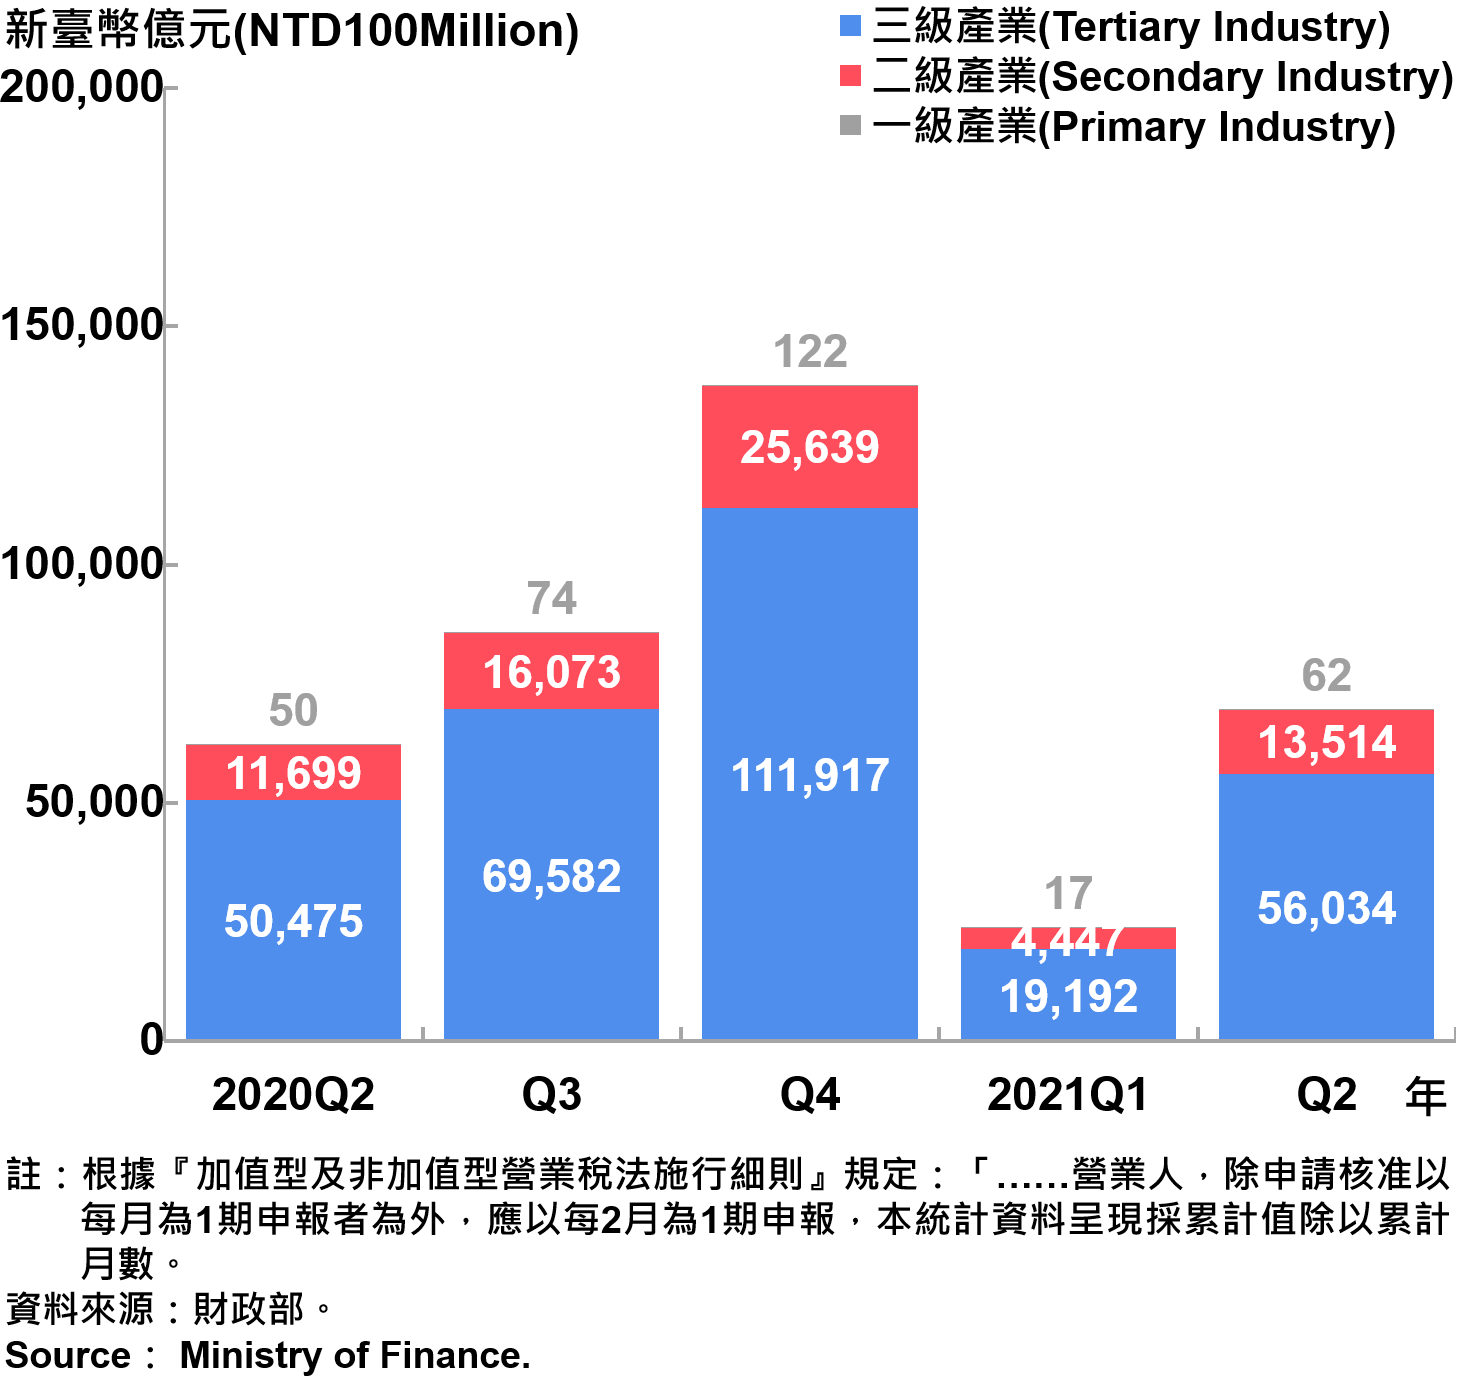 臺北市一二三級產業銷售額—2021Q2 Sales of Primary, Secondary and Tertiary Industry in Taipei City—2021Q2